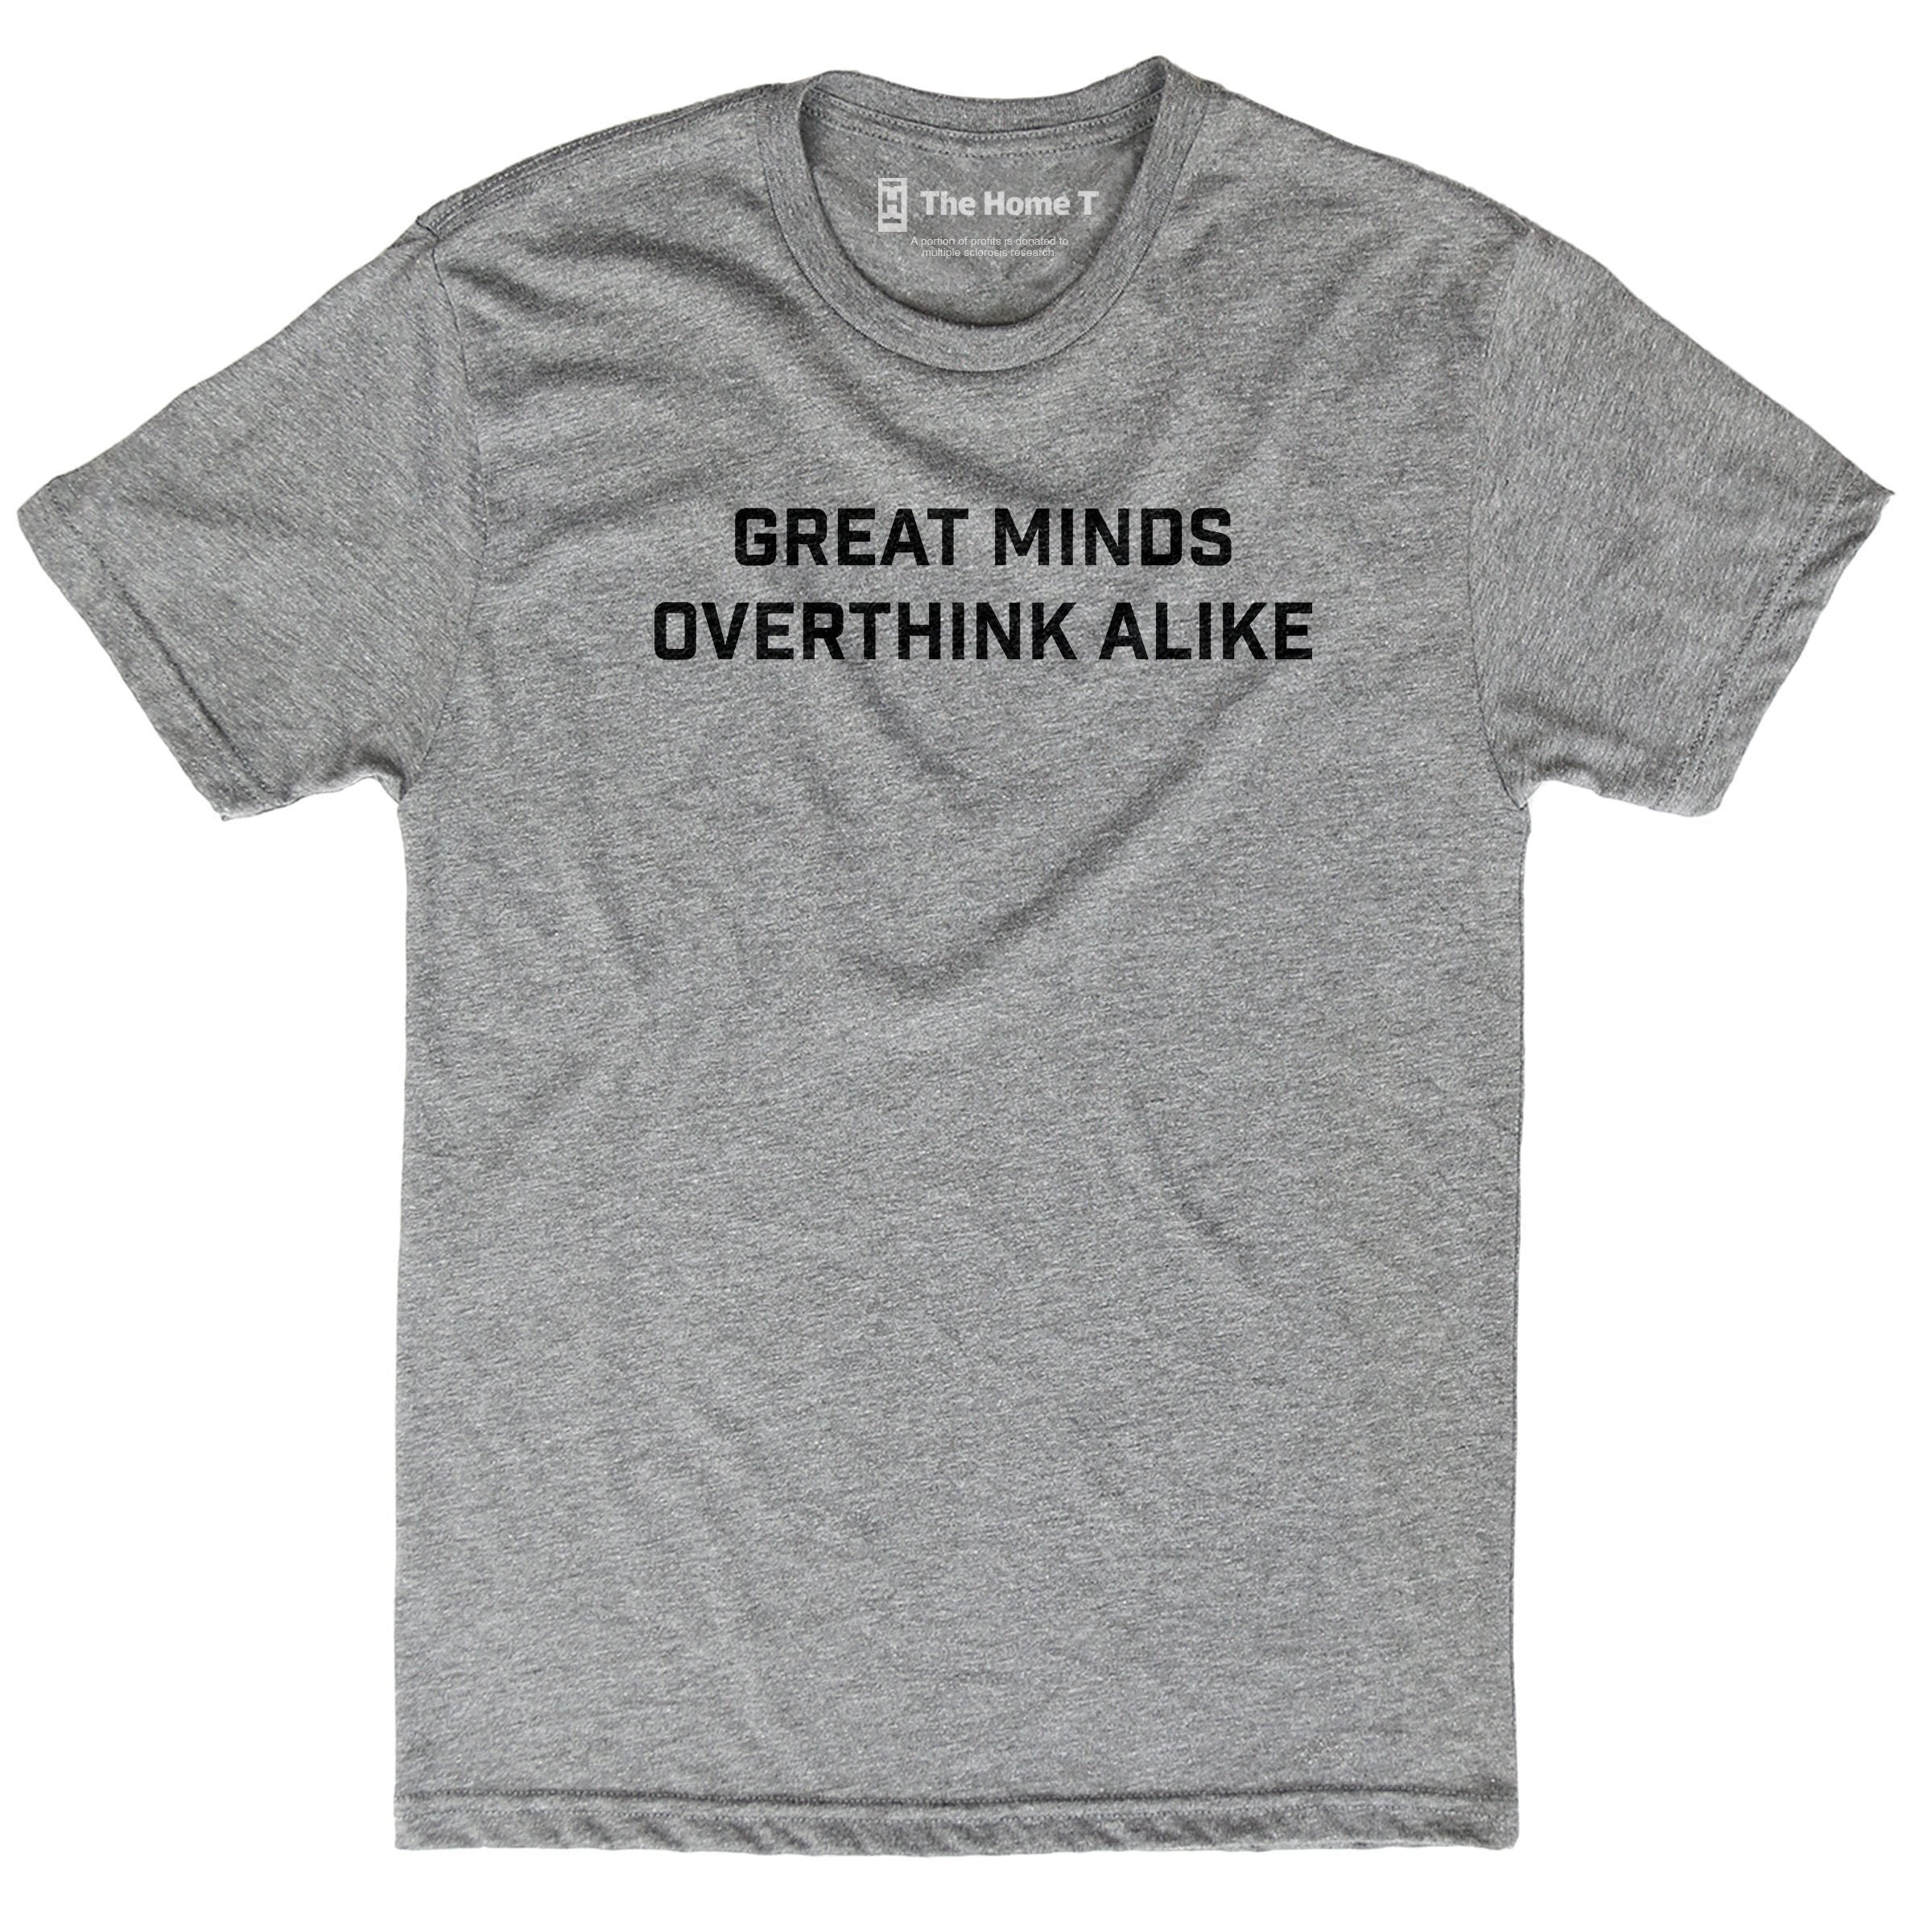 Great minds overthink alike. Athletic Grey Crewneck